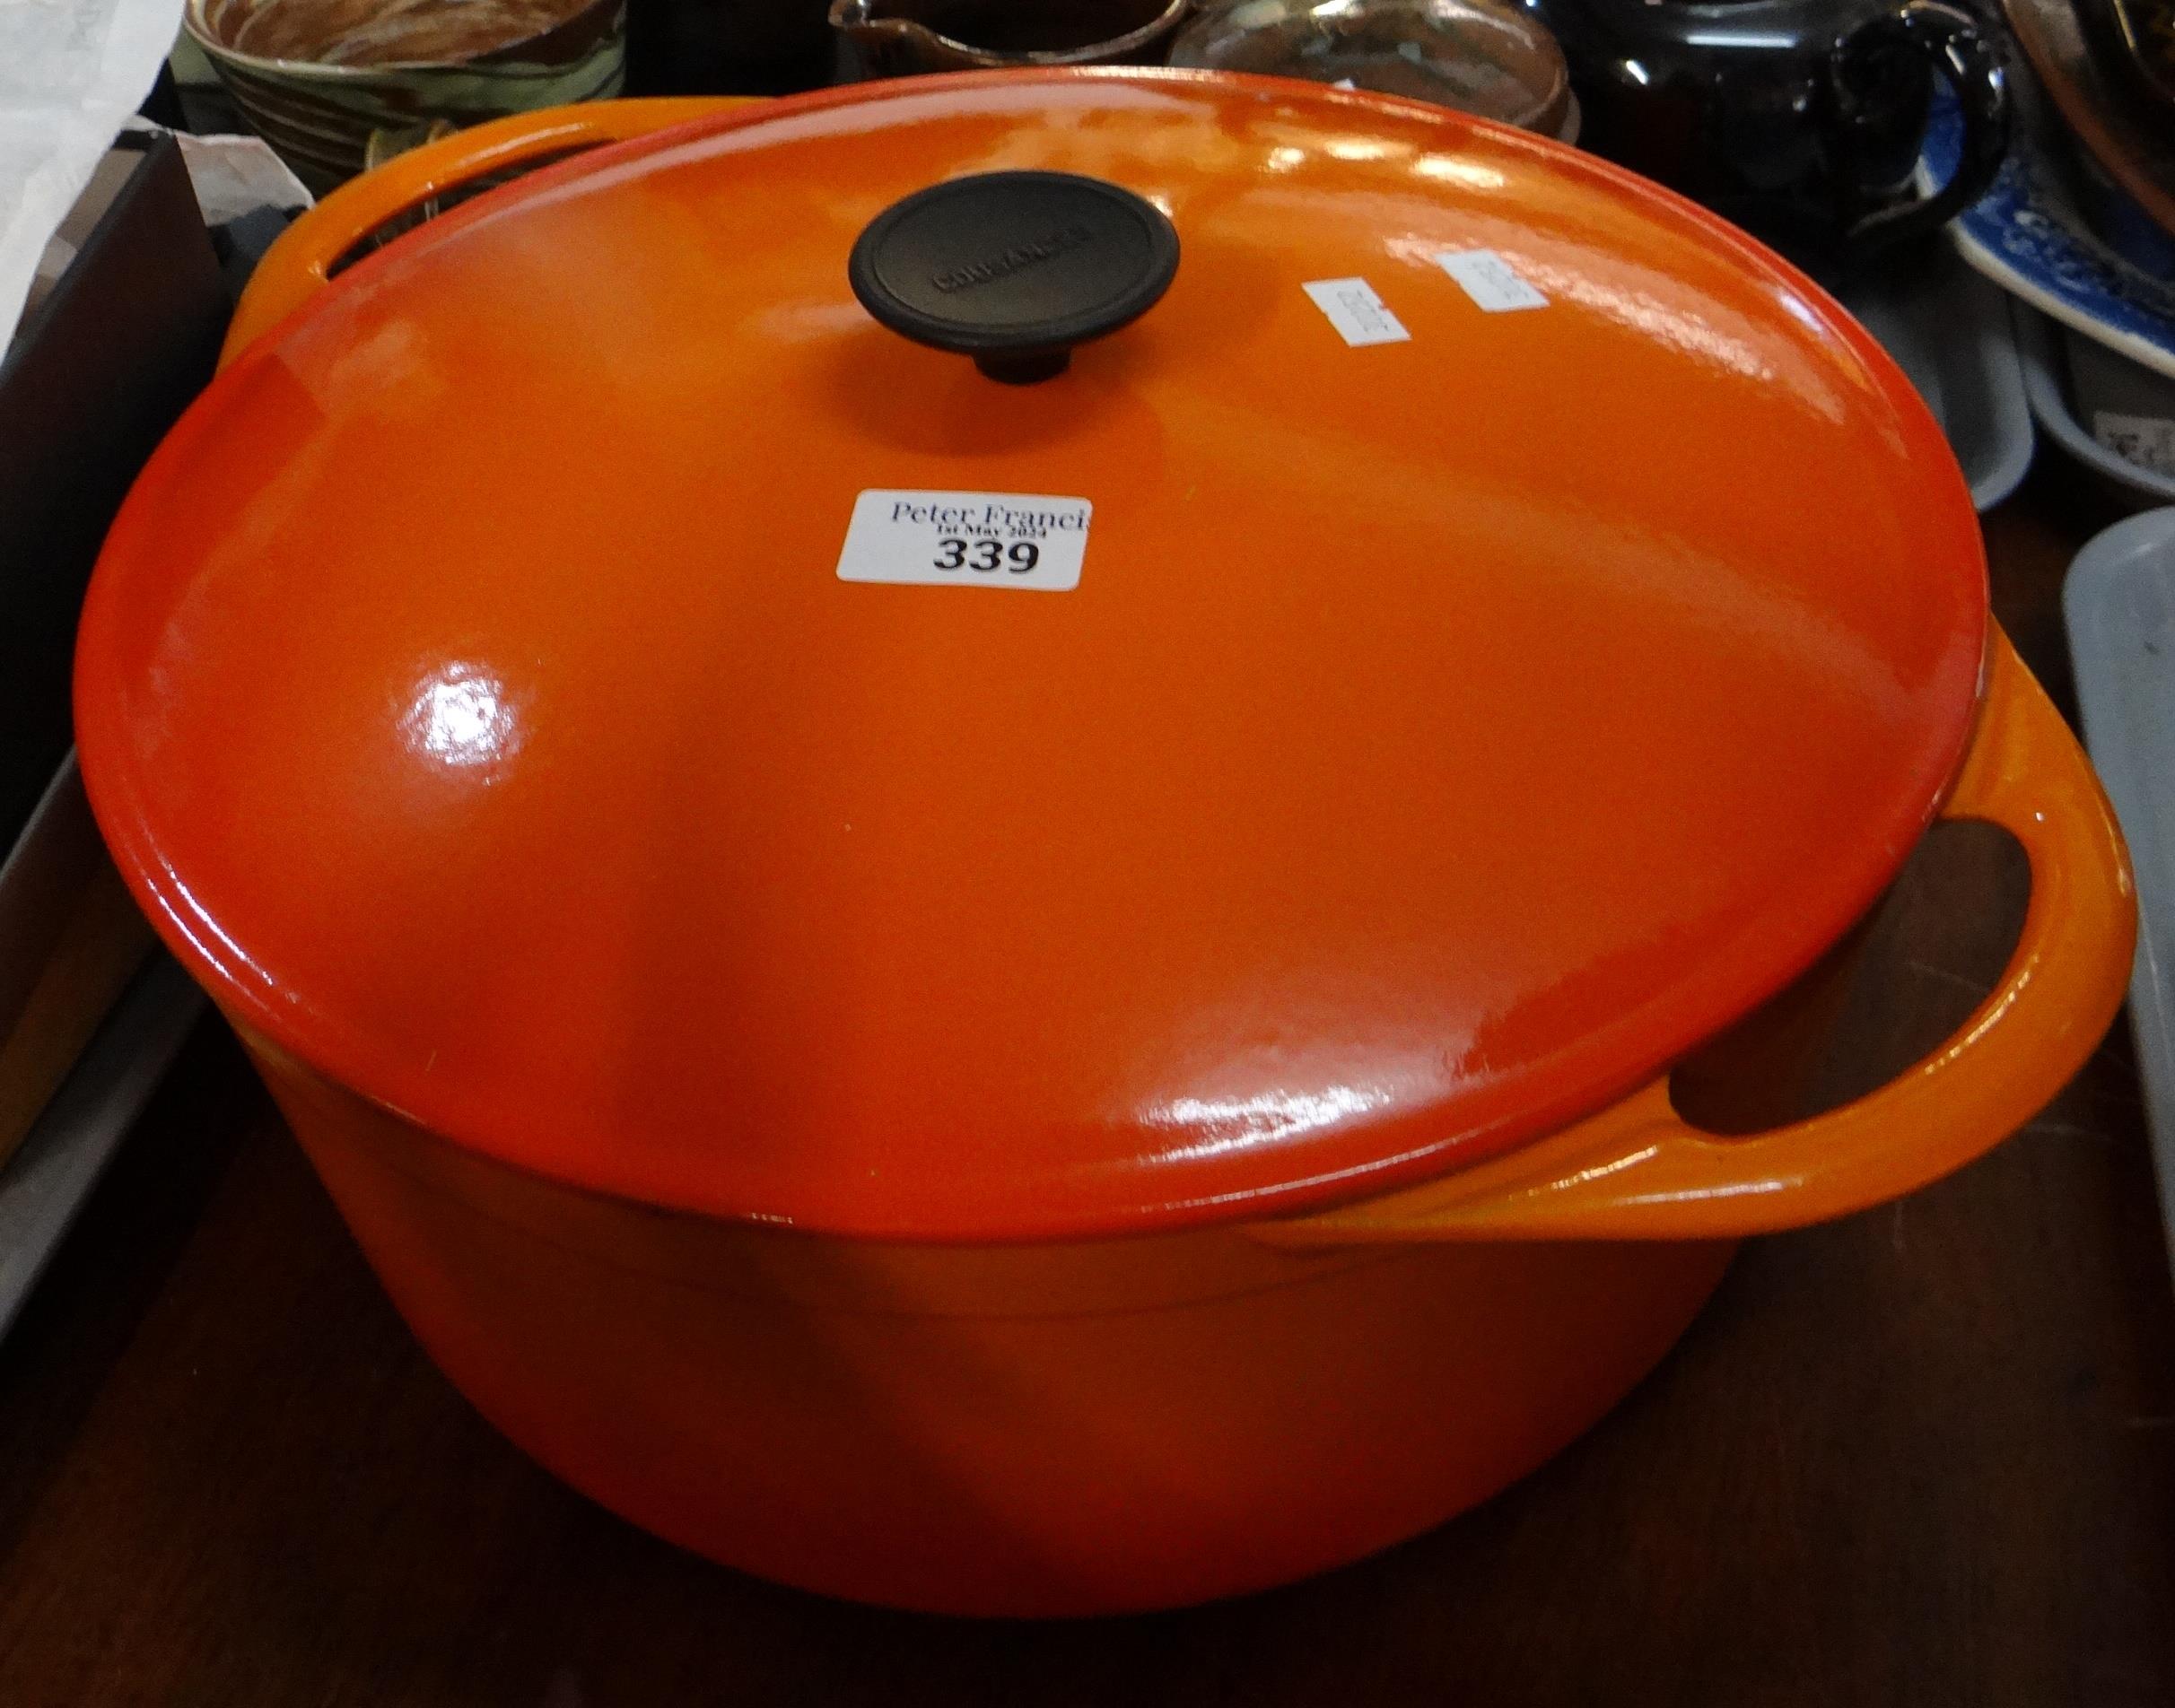 Cast metal orange casserole dish by Cousances. (B.P. 21% + VAT)